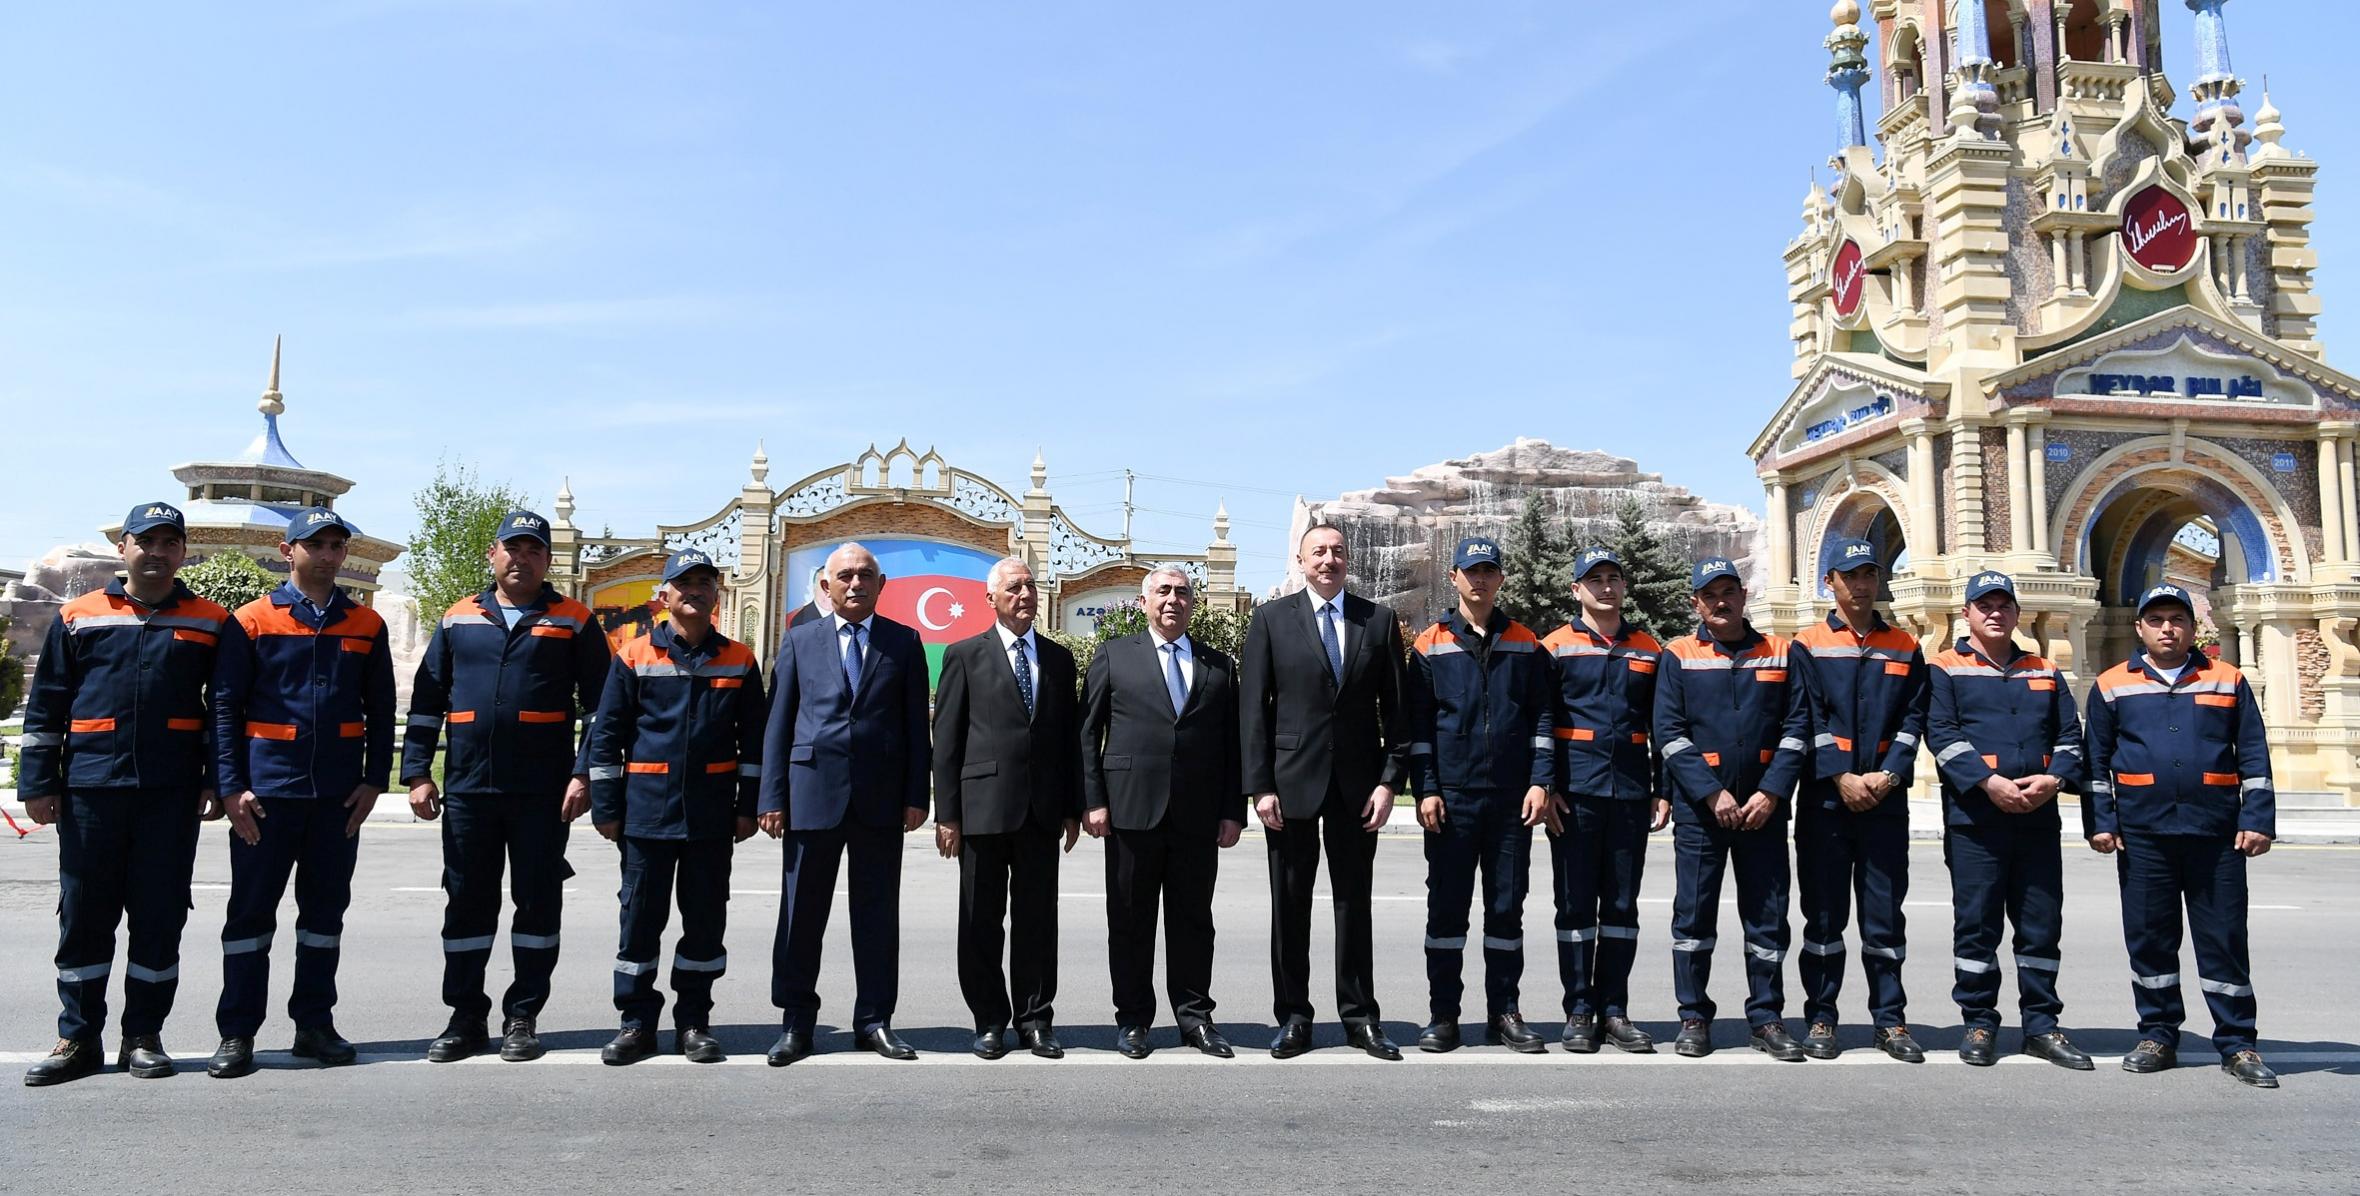 Ильхам Алиев принял участие в открытии 24-километровой части автомобильной дороги Хачмаз-Худат после реконструкции и восстановления